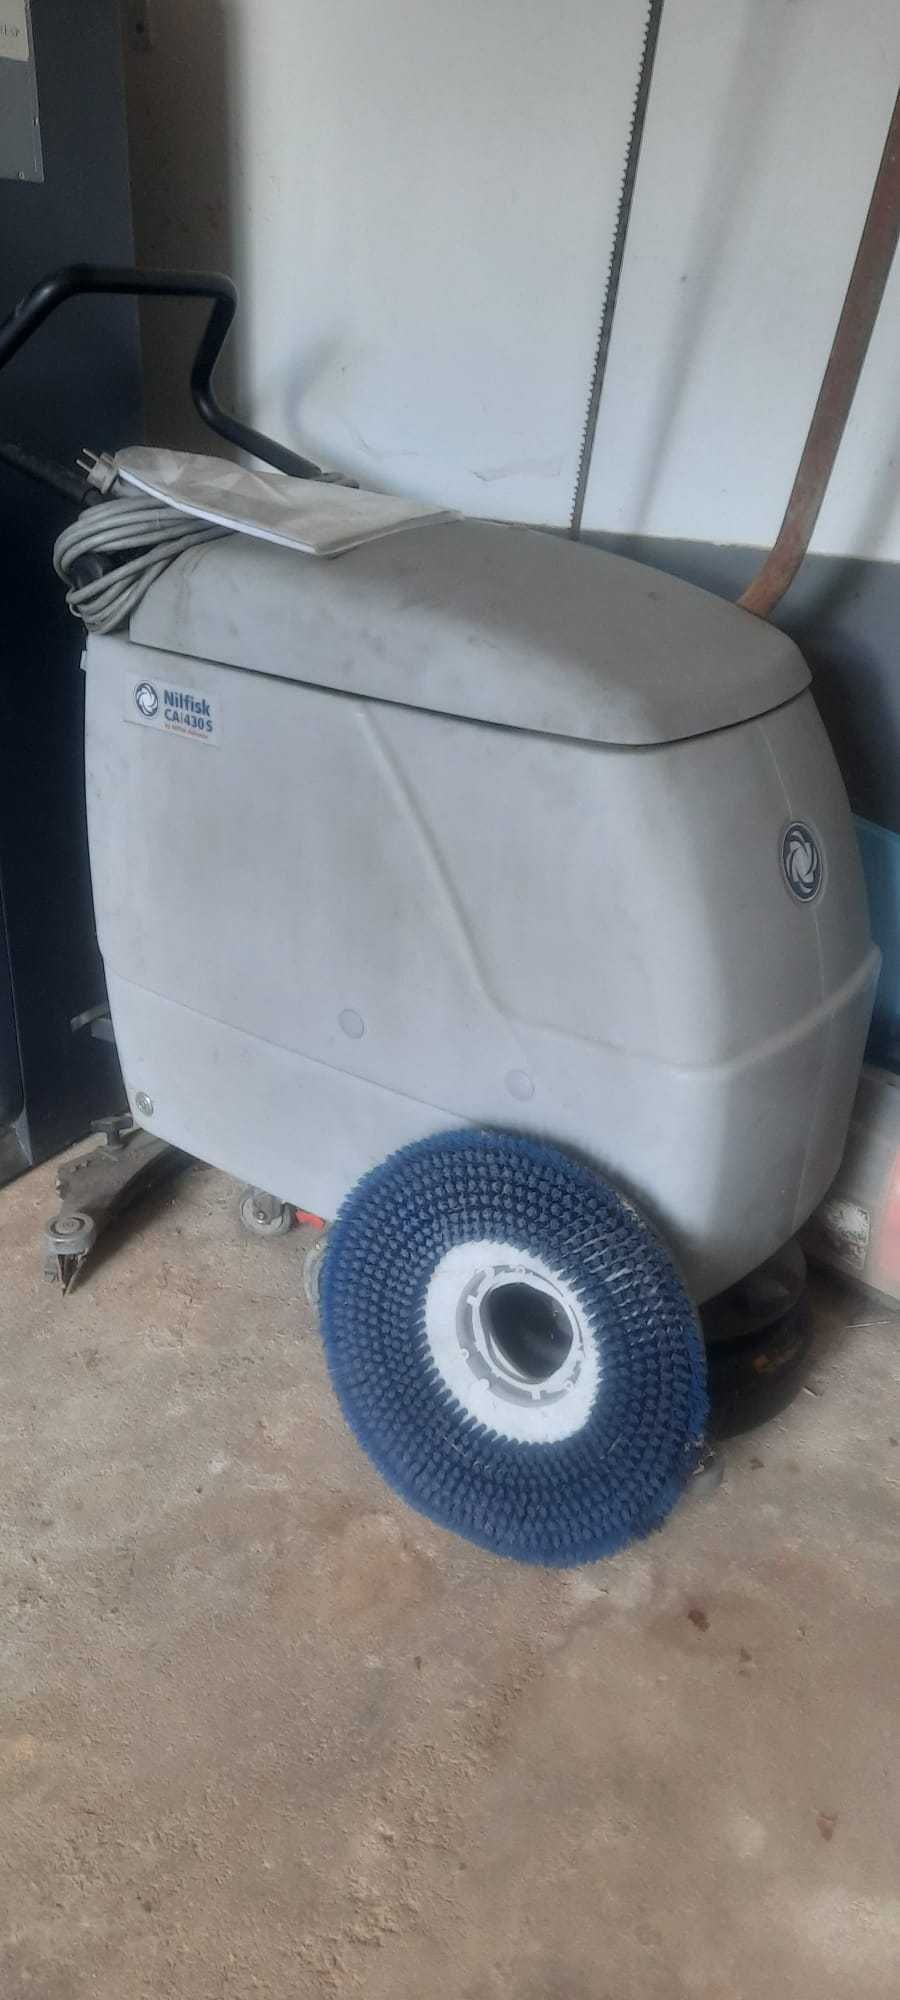 Máquina de lavar pavimentos NILFISK CA430s